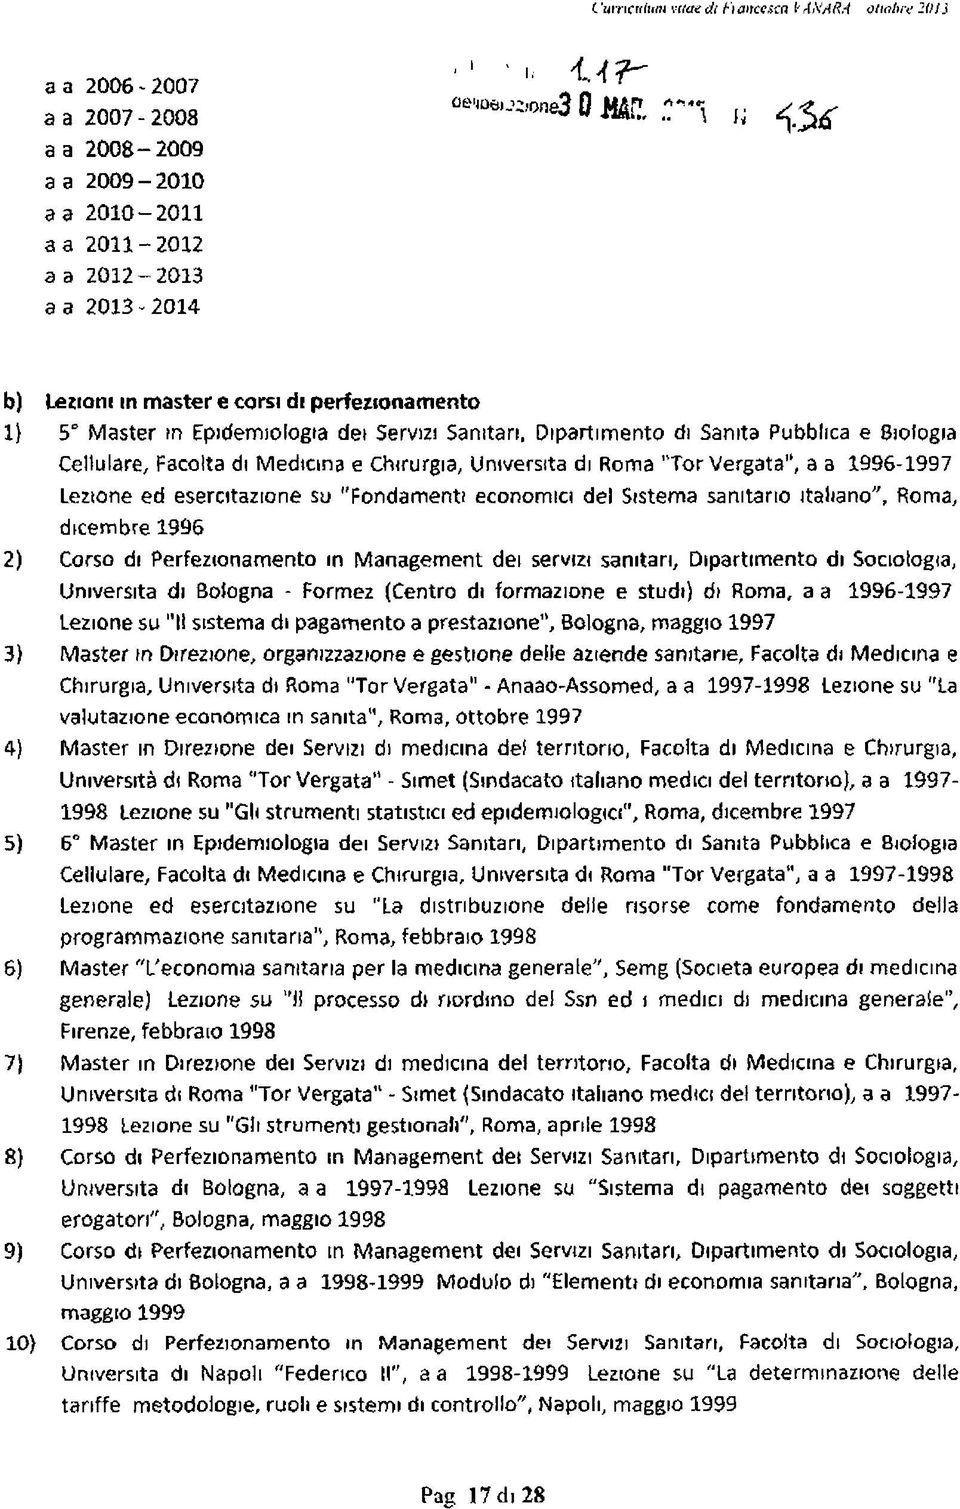 Cellulare, Facolta di Medicina e Chirurgia, Università di Roma Tor Vergata", a a 1996-1997 Lezione ed esercitazione su "Fondamenti economici del Sistema sanitario italiano", Roma, dicembre 1996 Corso